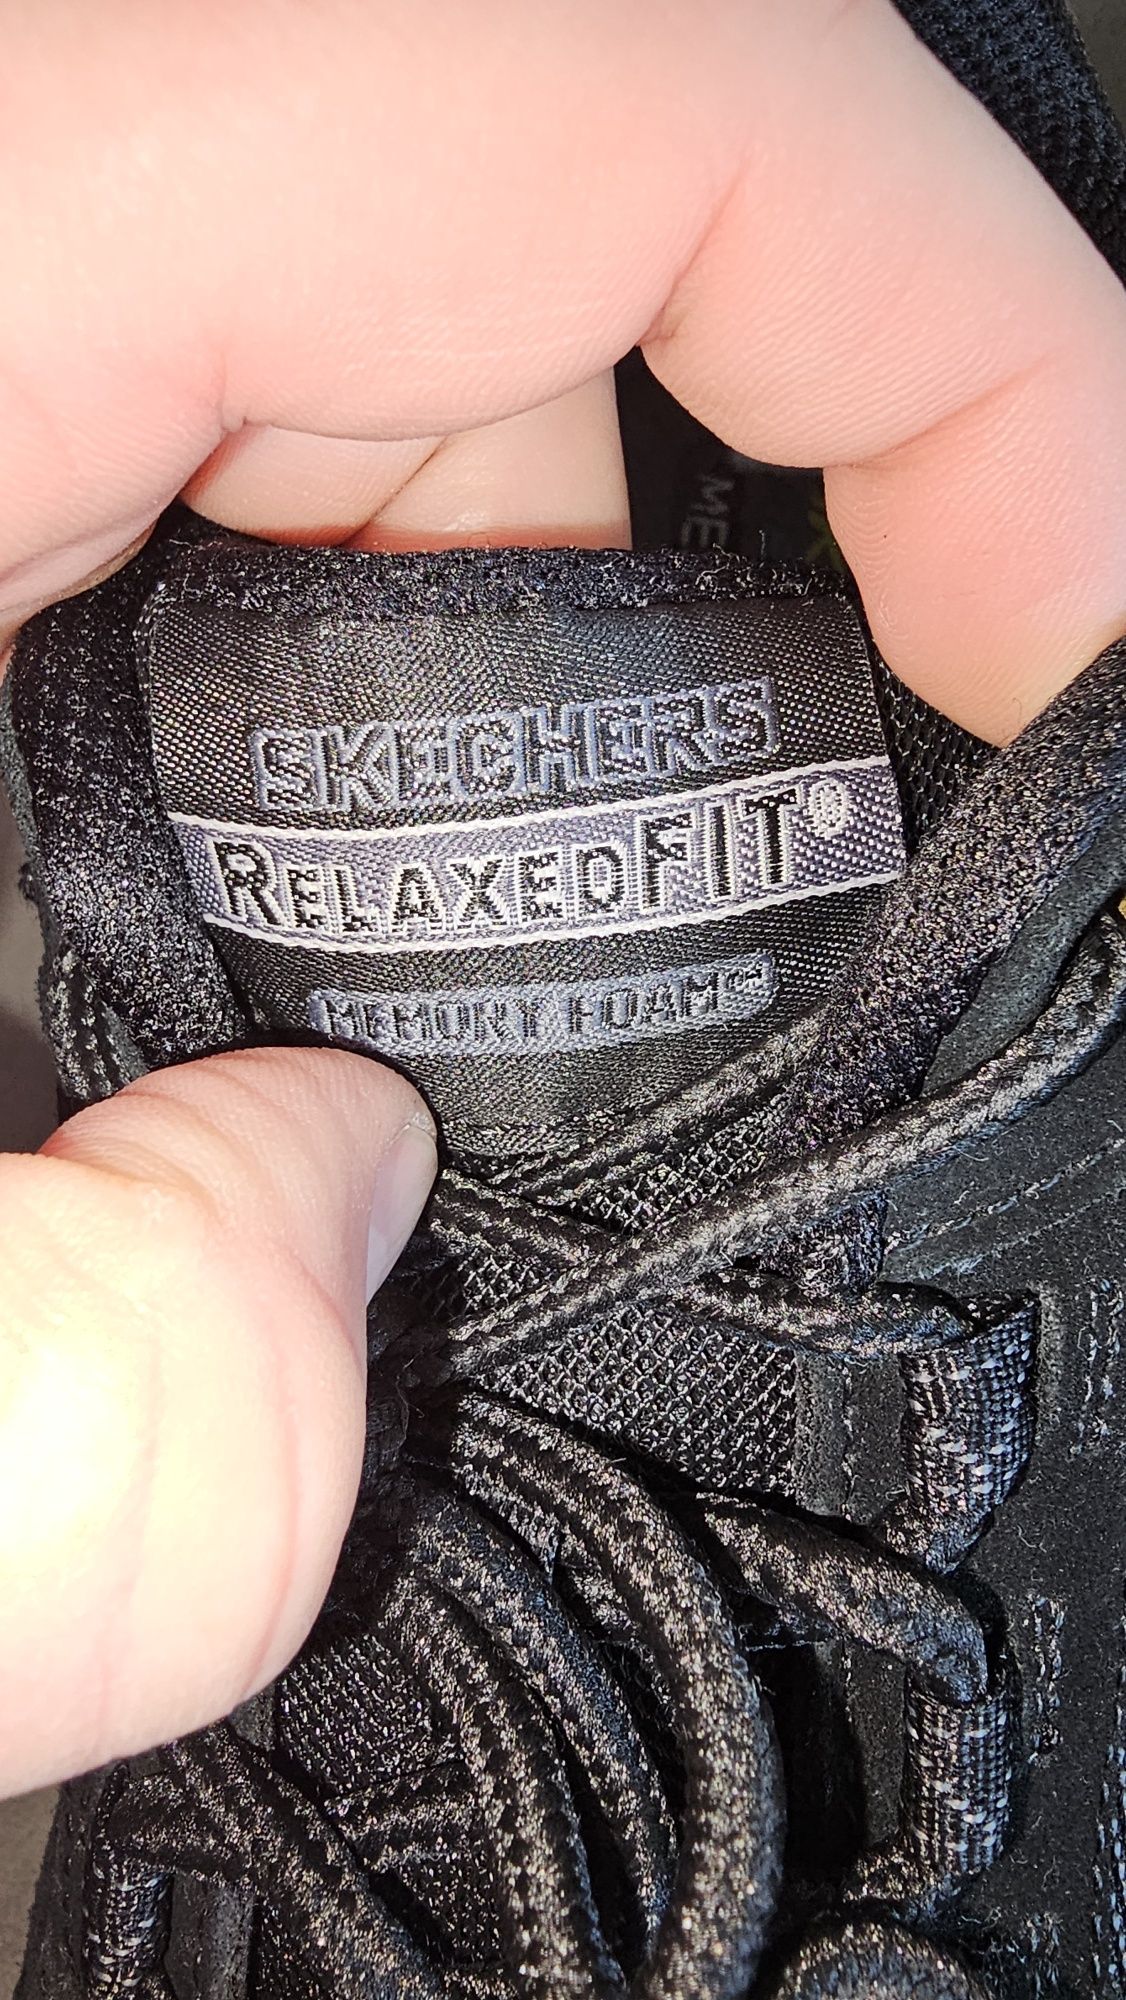 Adidasi SKECHERS Relax Fit Memory Foam pantofi sport casual